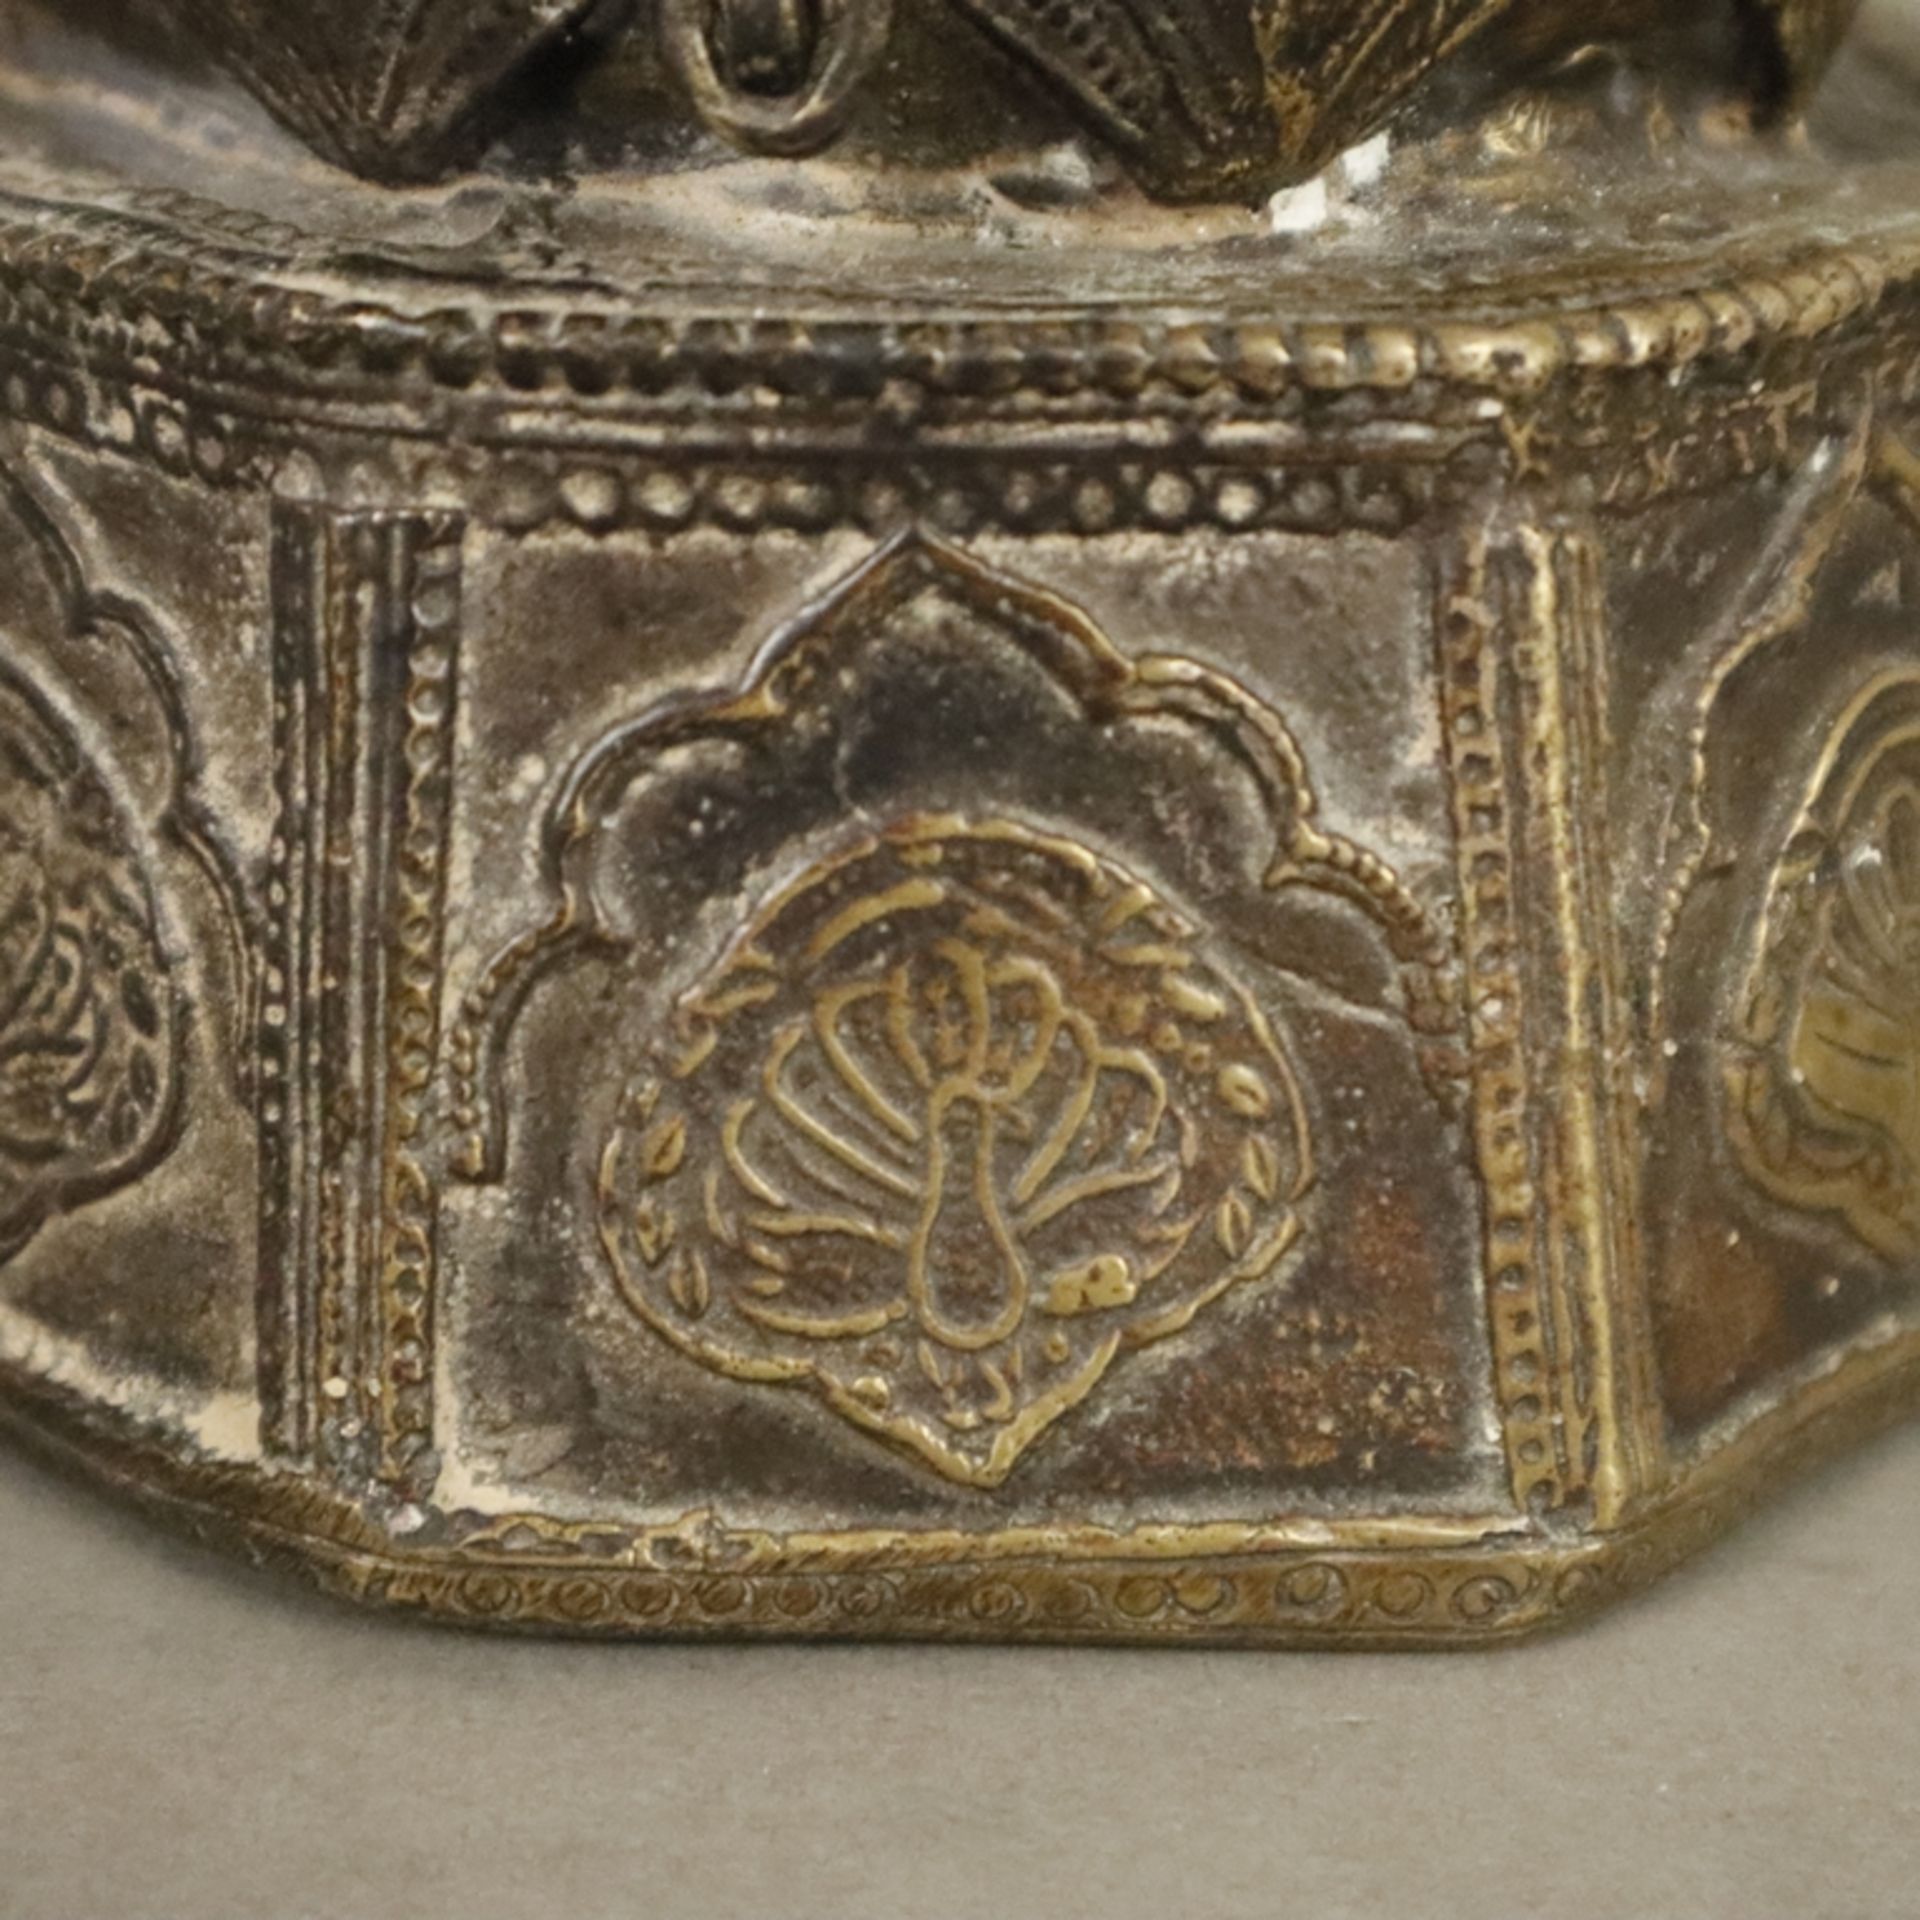 Bronzegefäß - wohl großes Tintenfass, Indien, unterer Teil der Wandung oktogonal geformt, oberer Te - Image 6 of 9